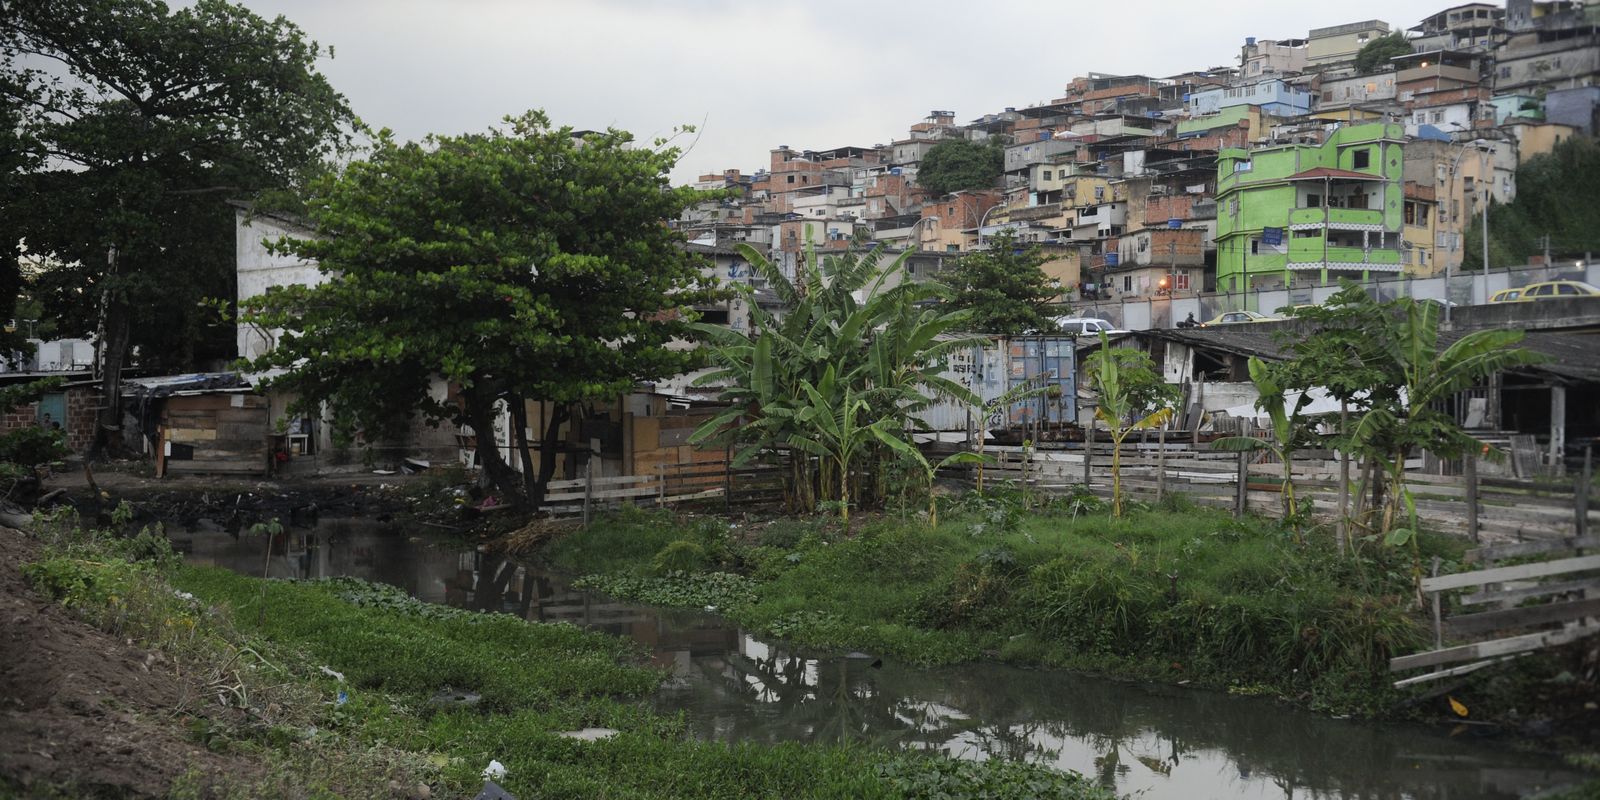 Críticas a visitas a favelas revelam preconceito, dizem especialistas